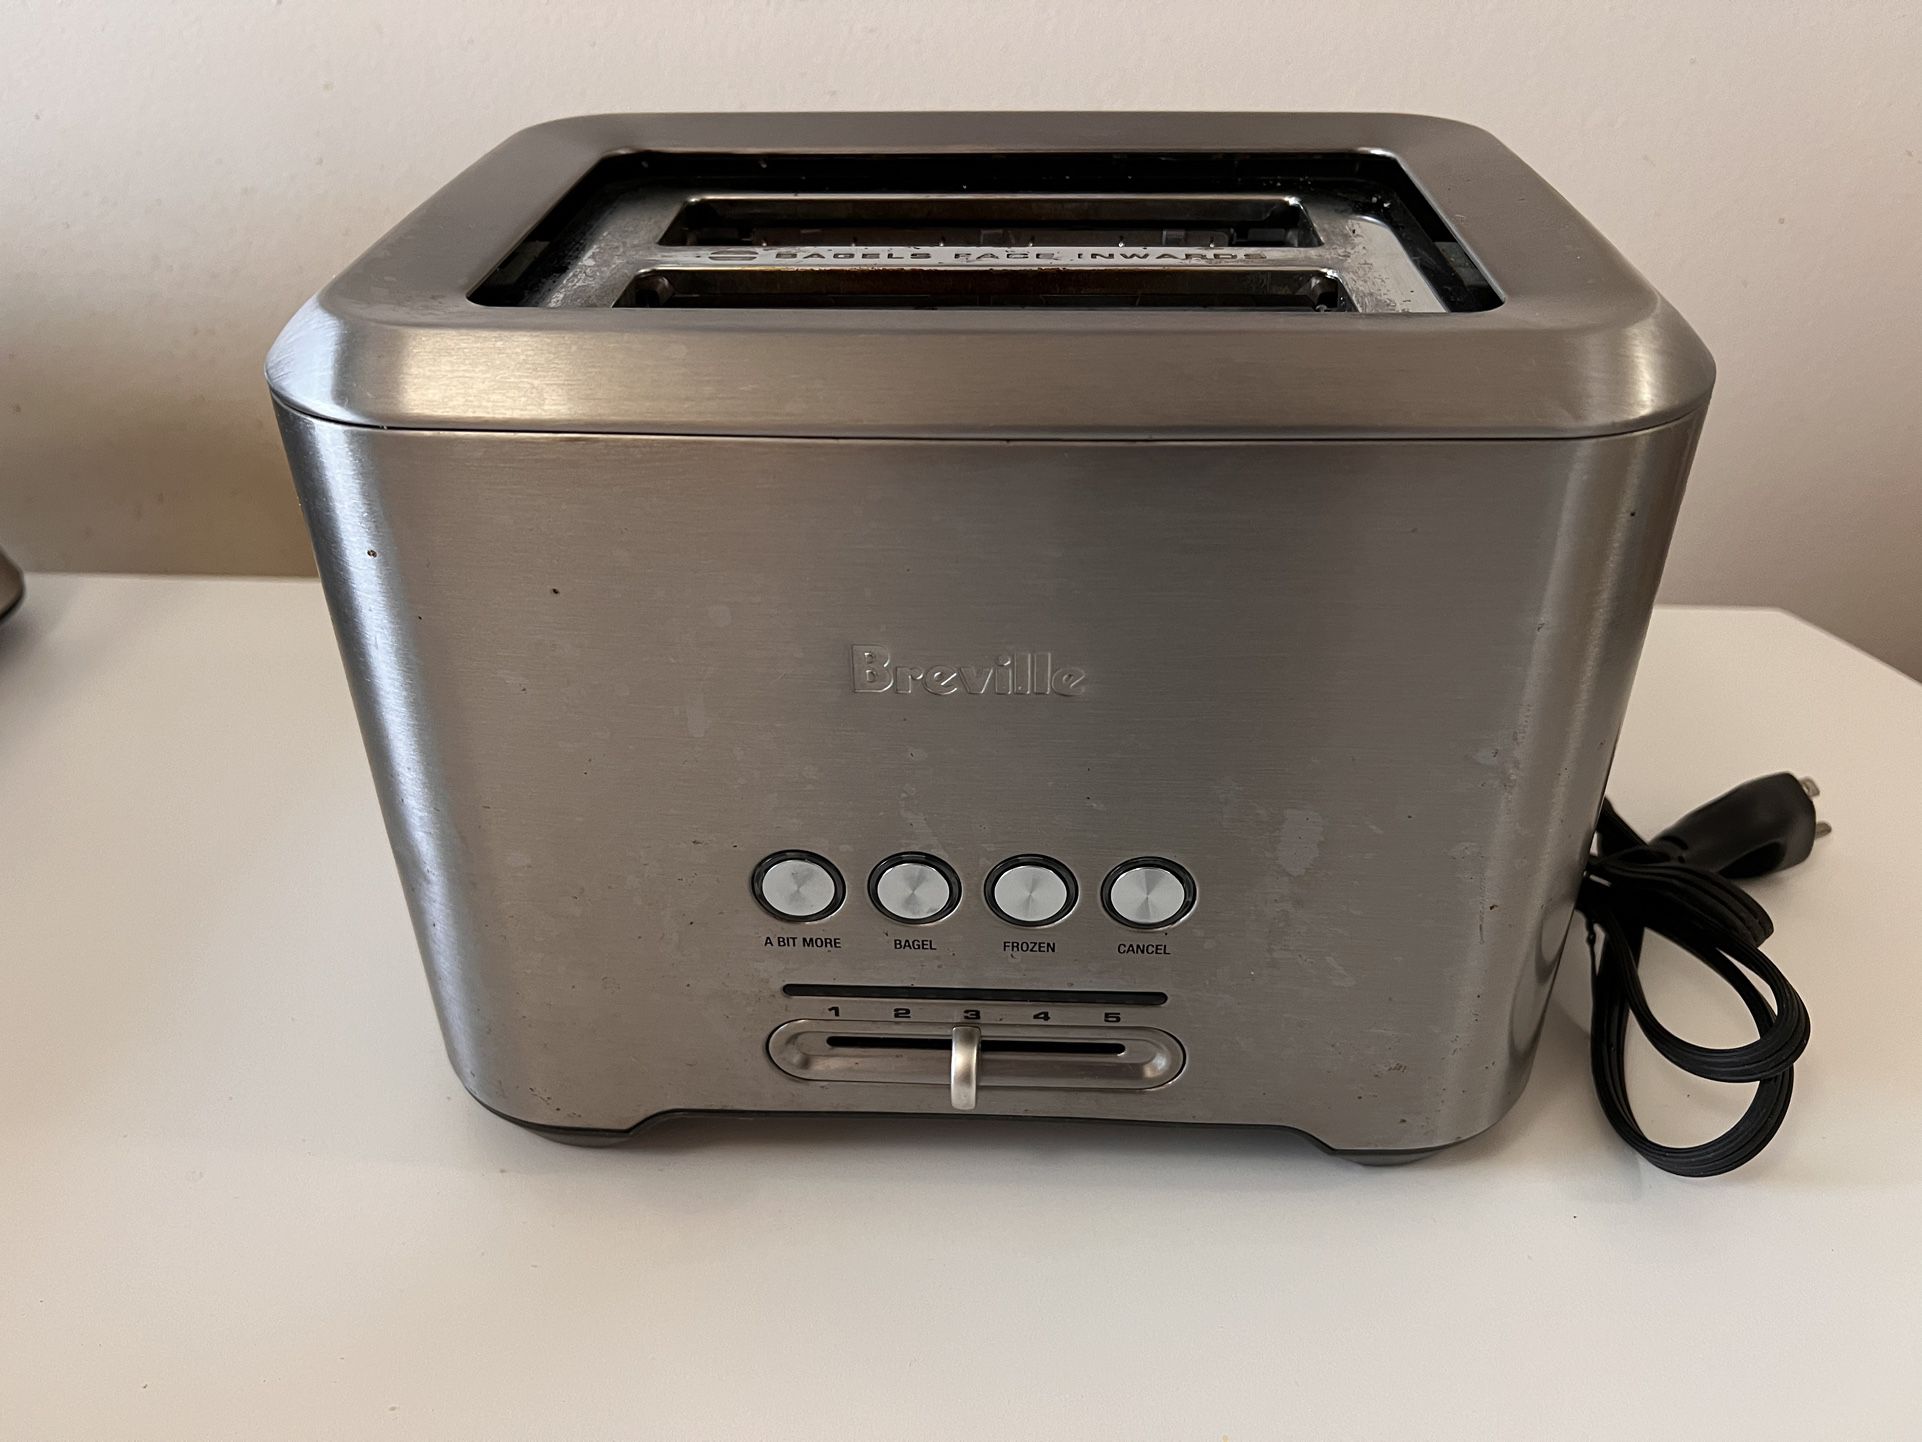 Breville “A Bit More” 2-Slice Toaster